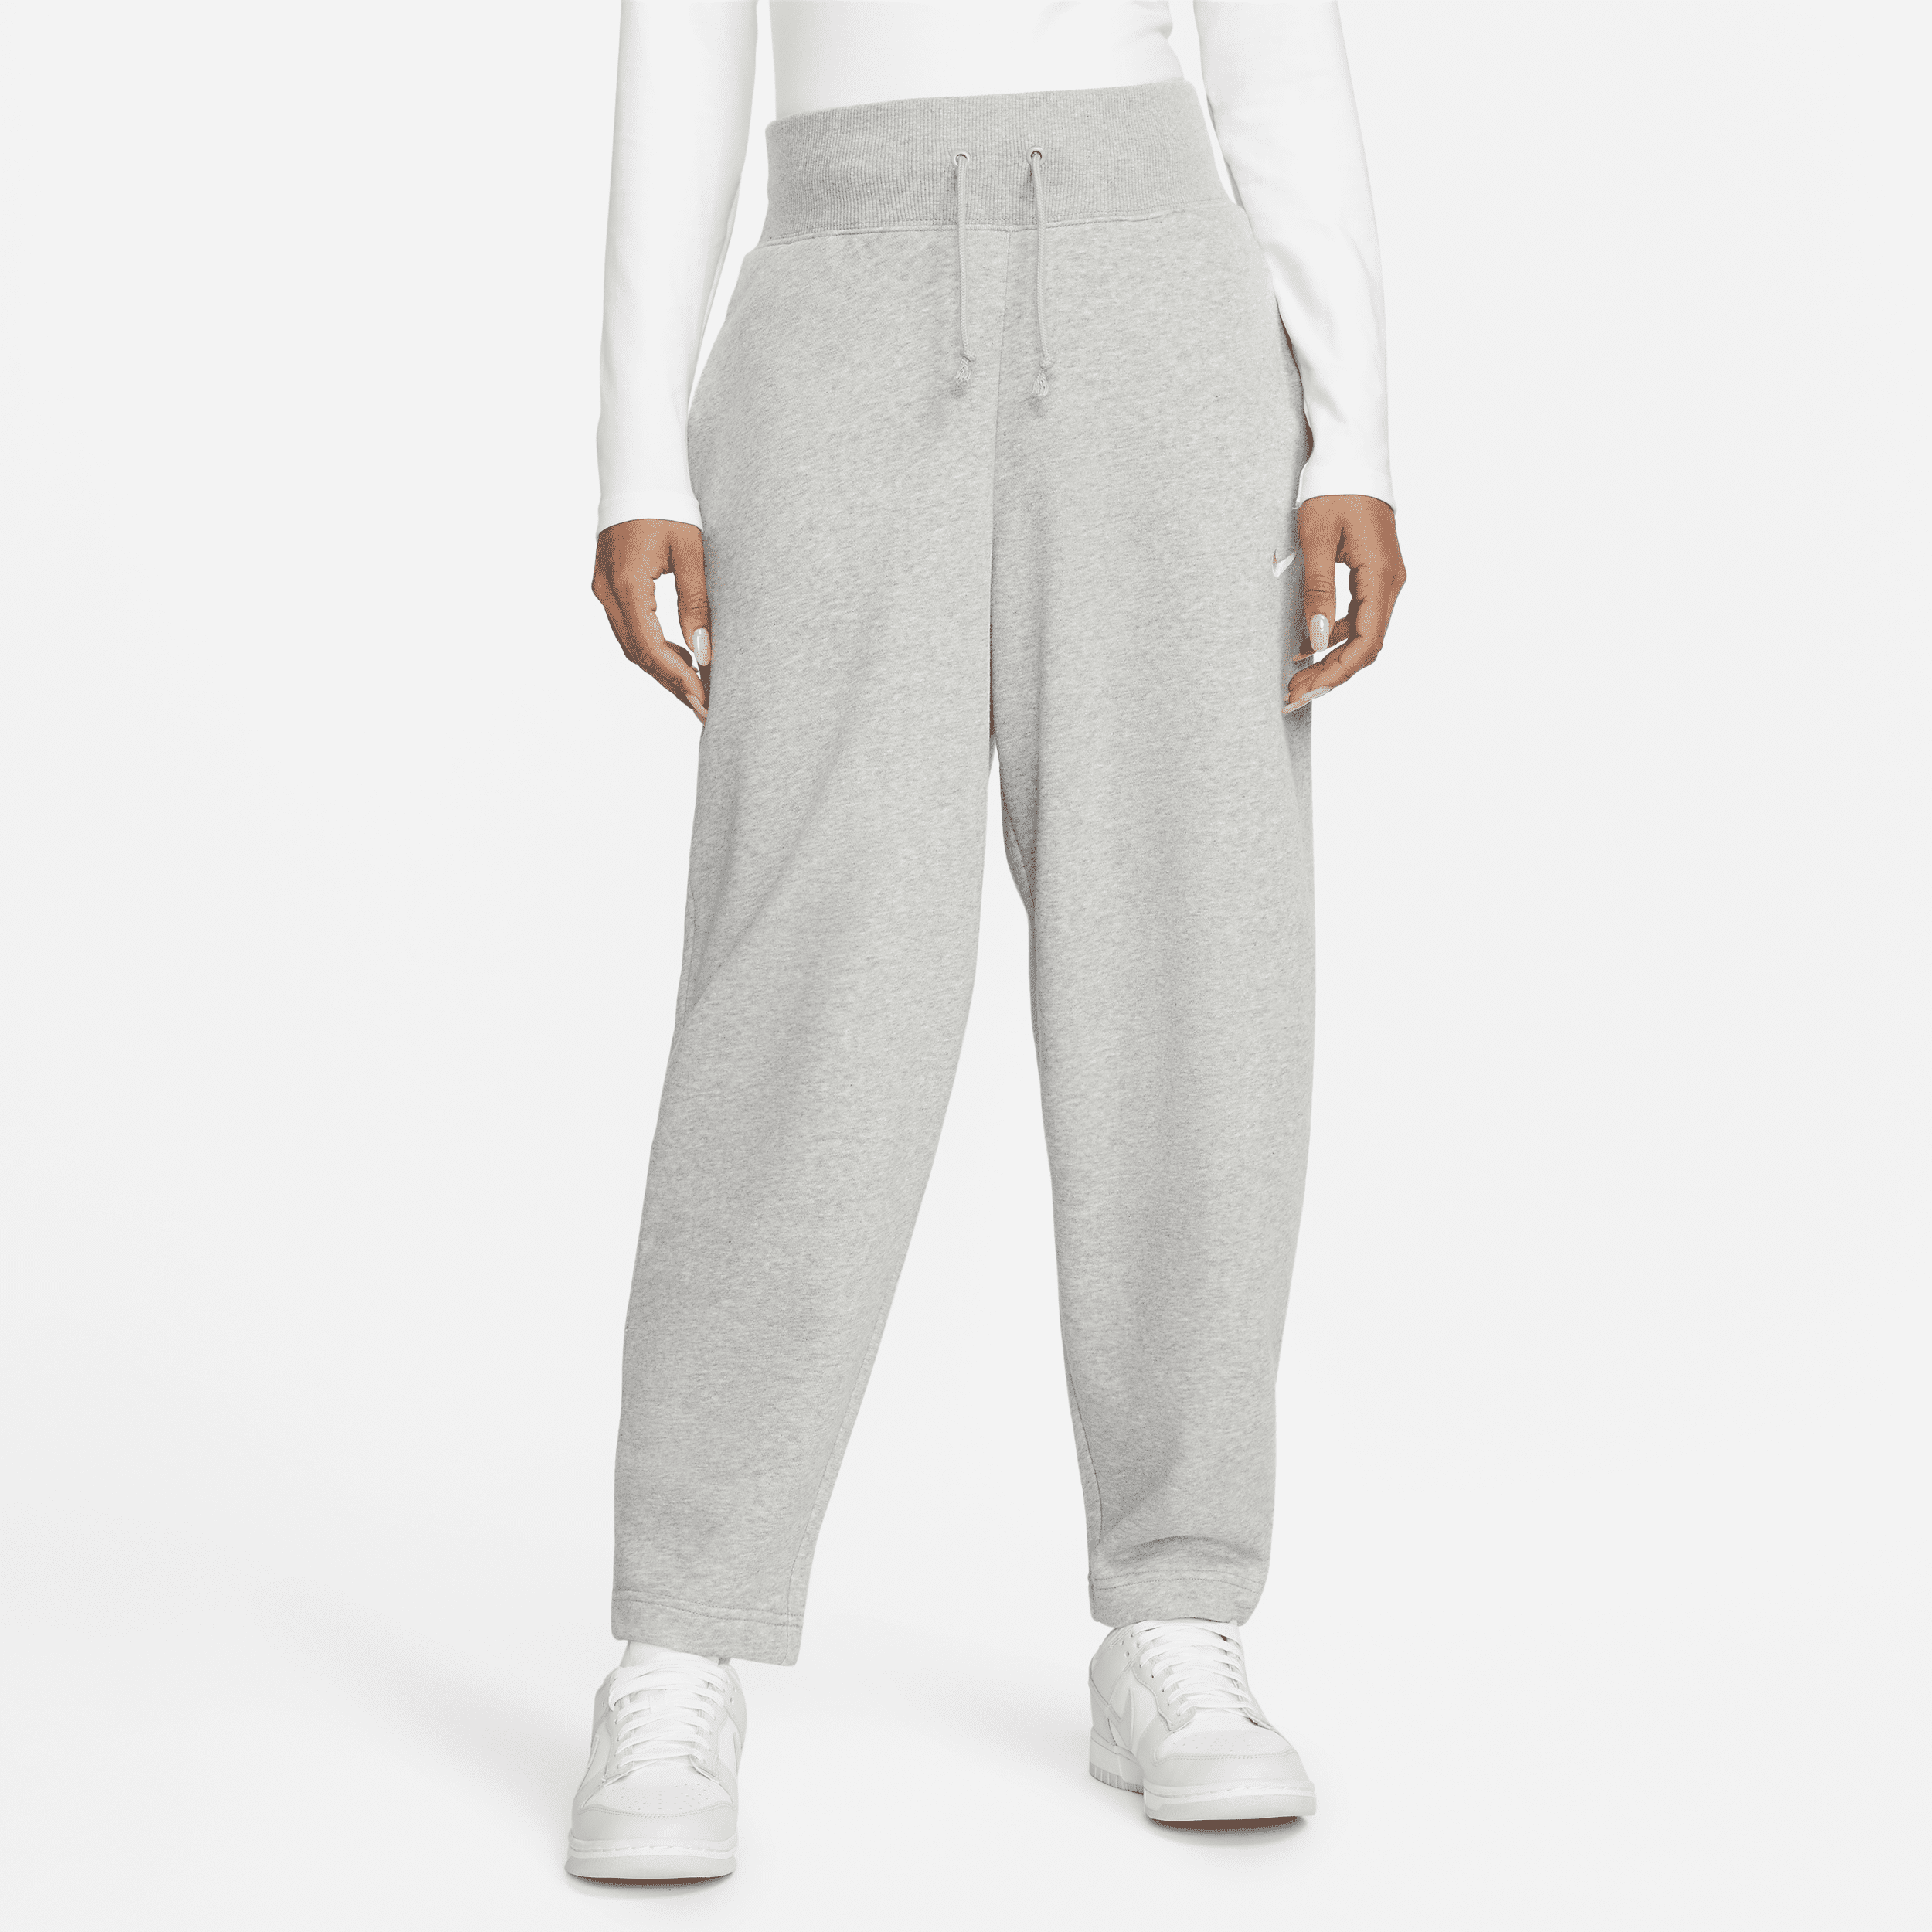 Nike Sportswear Phoenix Fleece-sweatpants i 7/8-længde med høj talje og buede ben til kvinder - grå